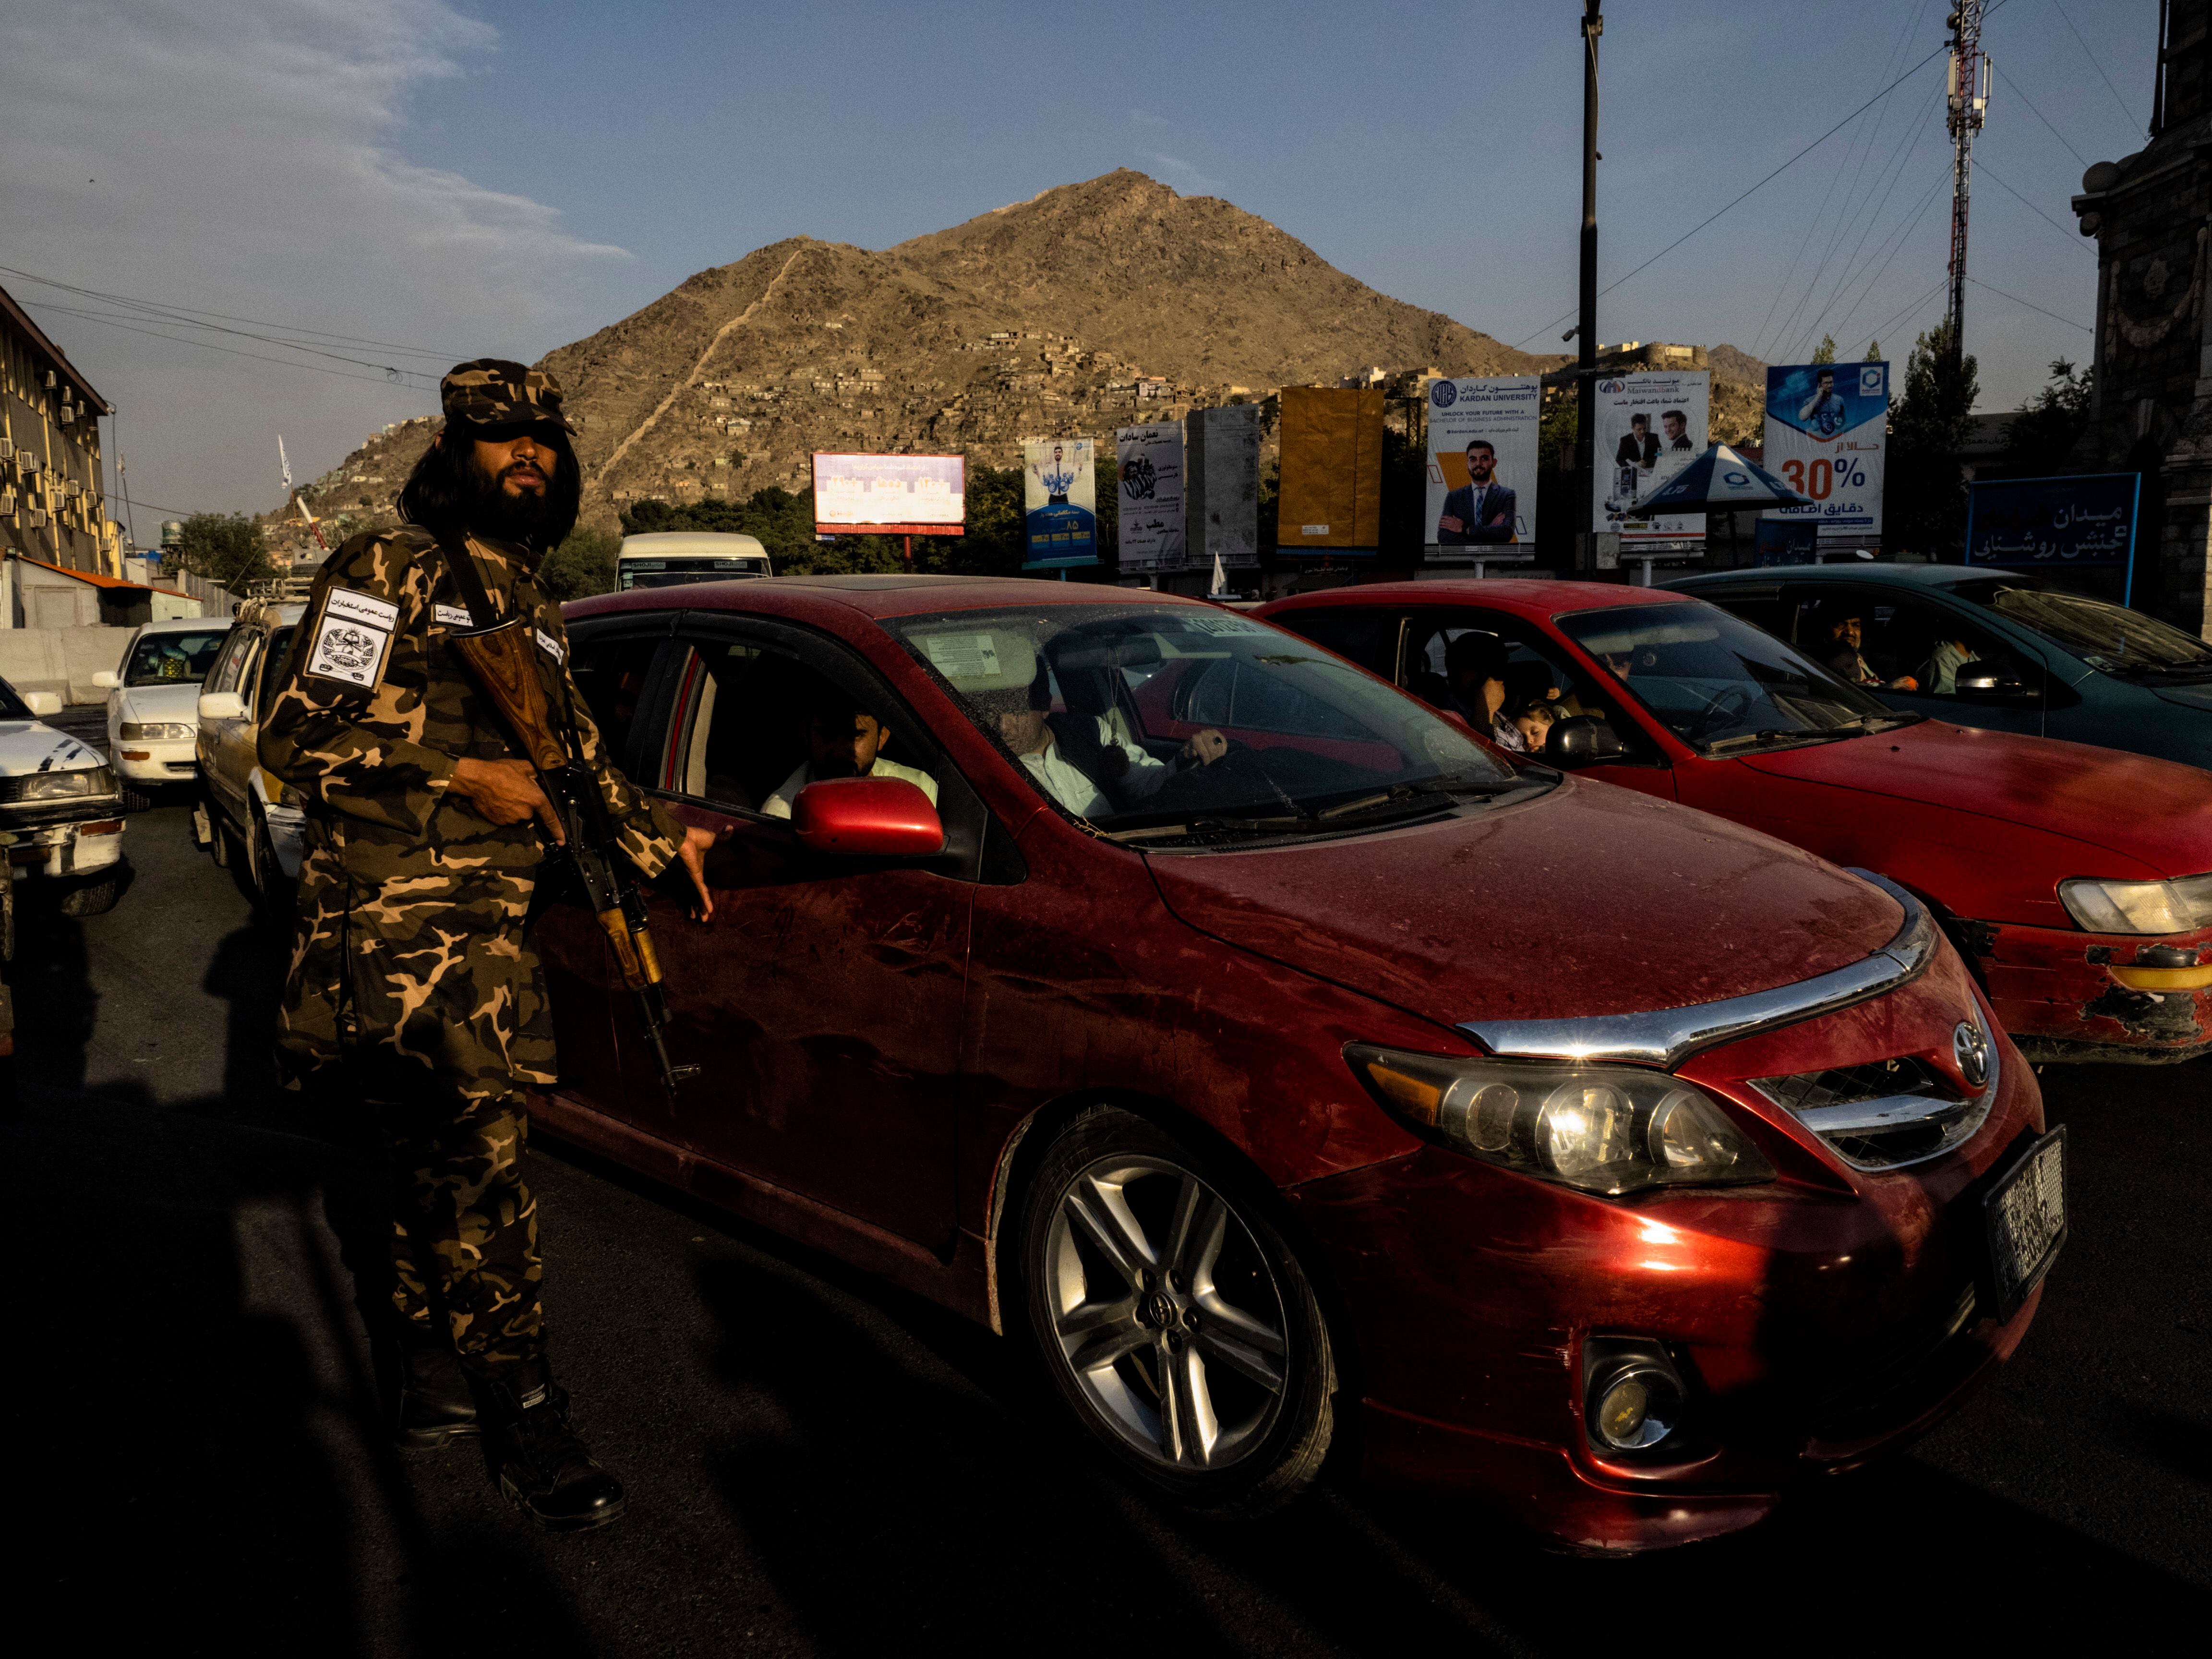 Soldado da milícia controla o tráfego na rotatória onde o Talibã exibe os supostos ladrões.